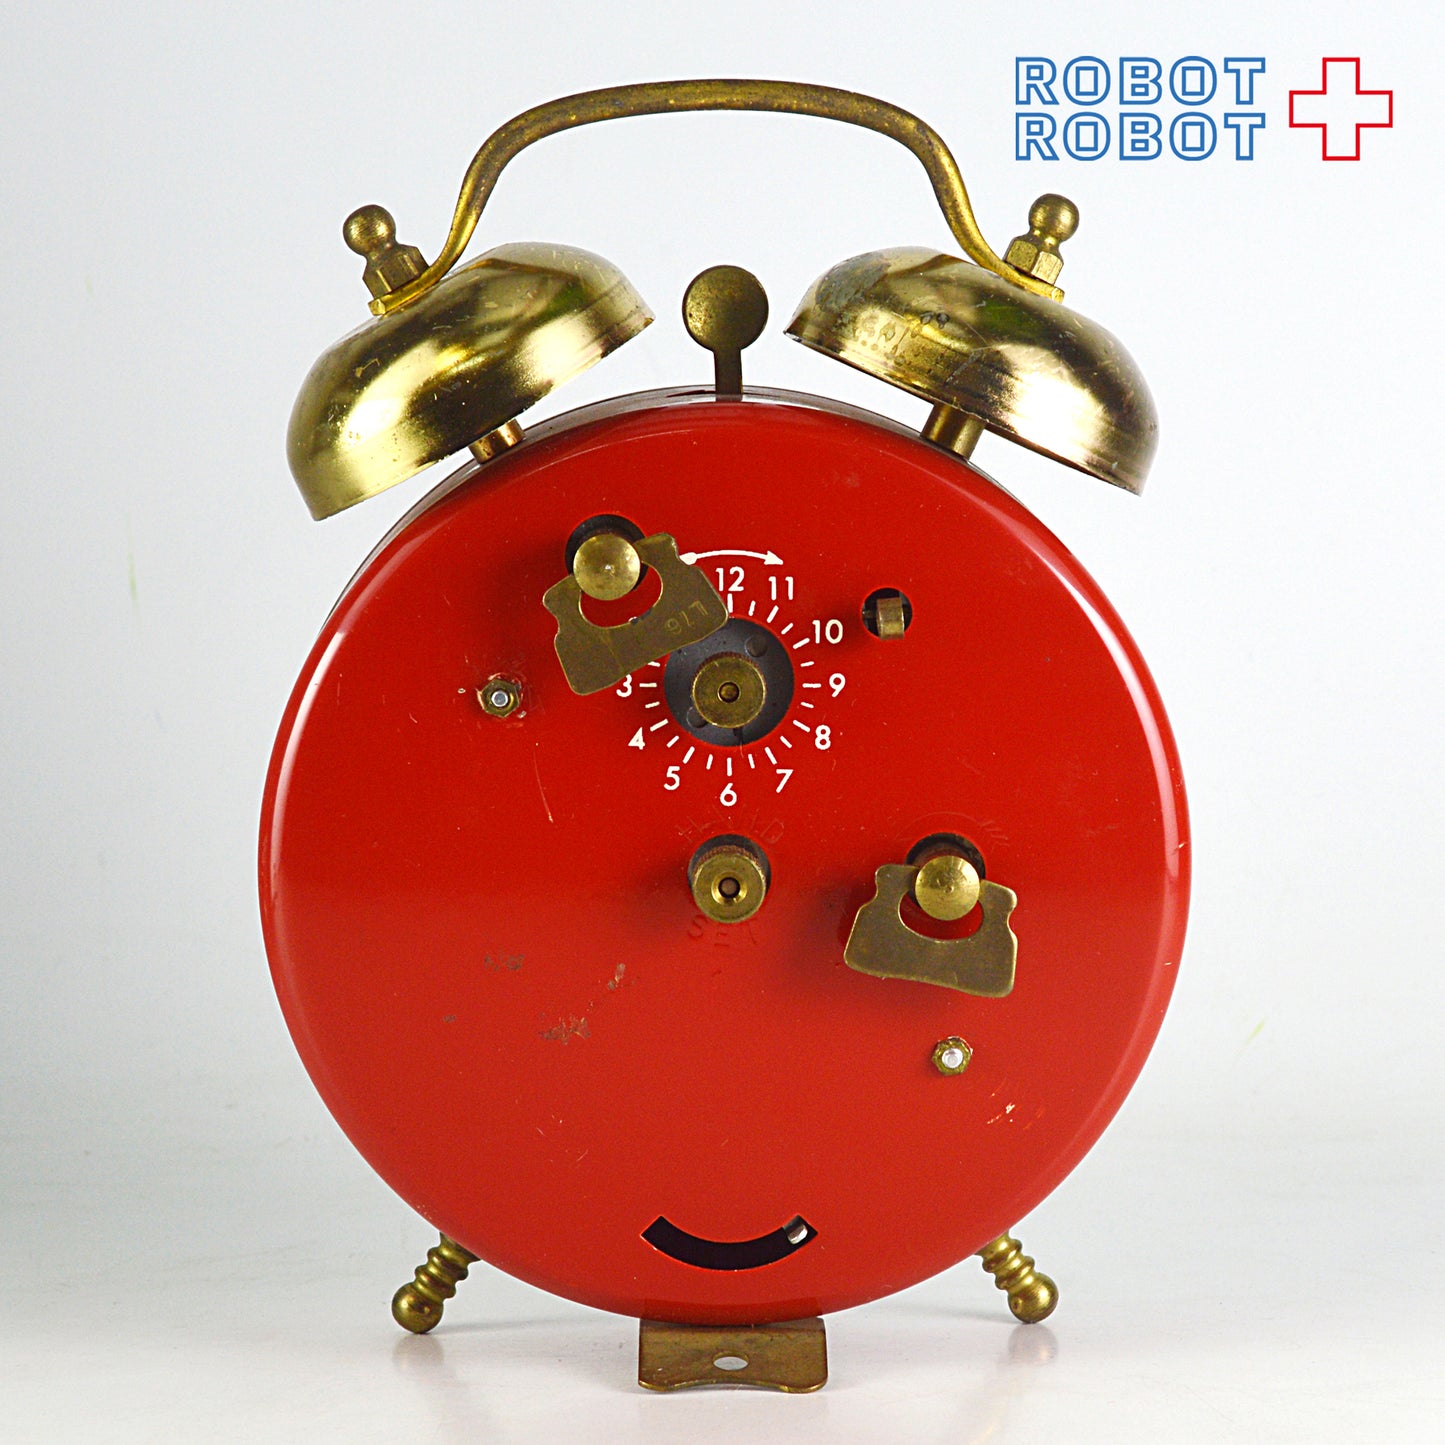 BRADLEY ミッキーマウス 手巻目覚まし時計 スイス製 ビンテージ